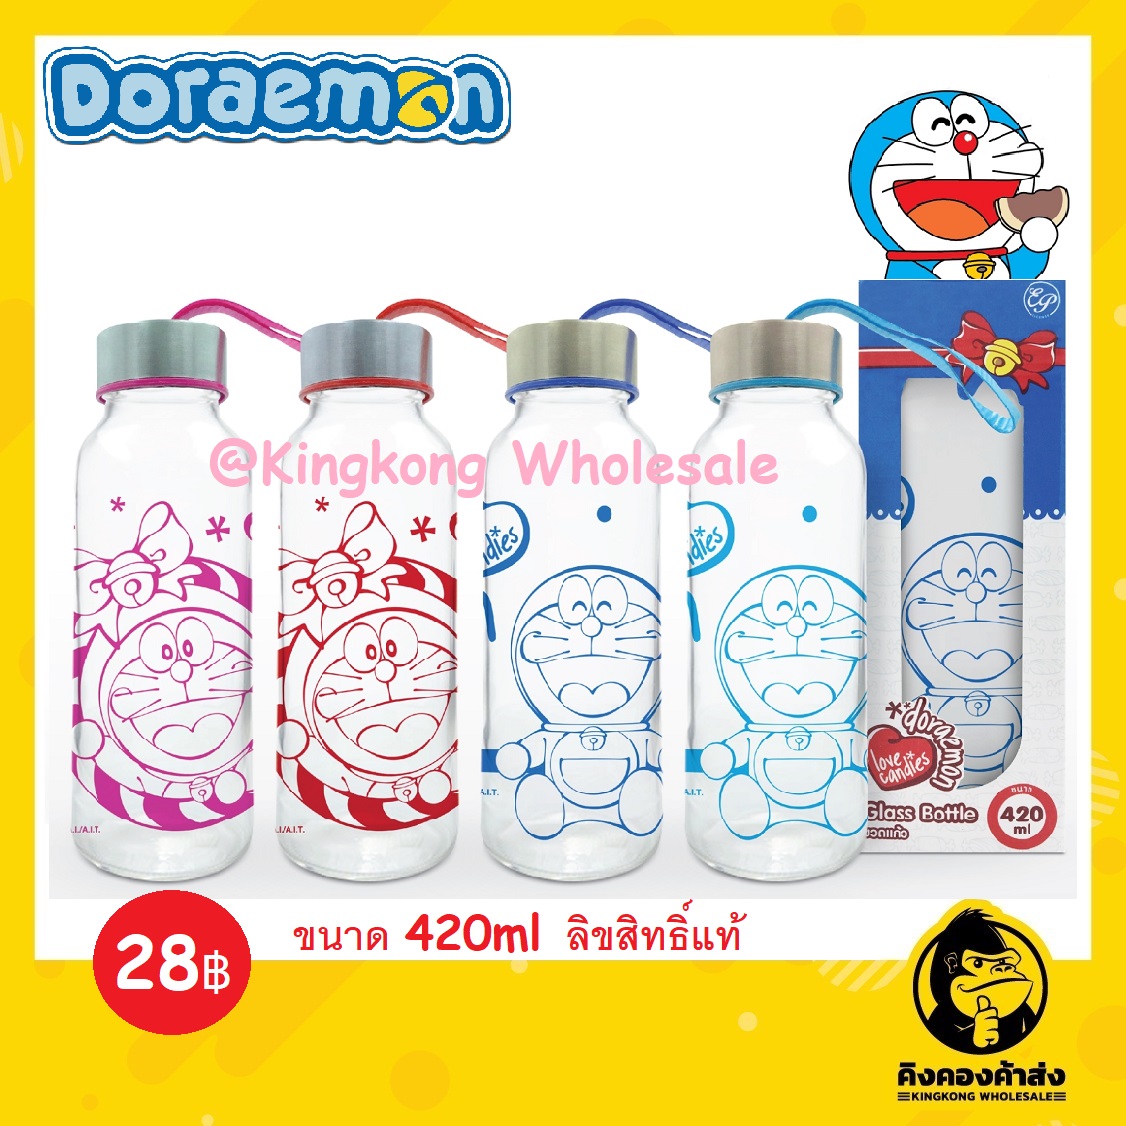 ถูกที่สุด !!! ขวดแก้วใส่น้ำพร้อมฝาปิด ลาย Doraemon น่ารัก ลิขสิทธิ์แท้ มีราคาขายส่ง